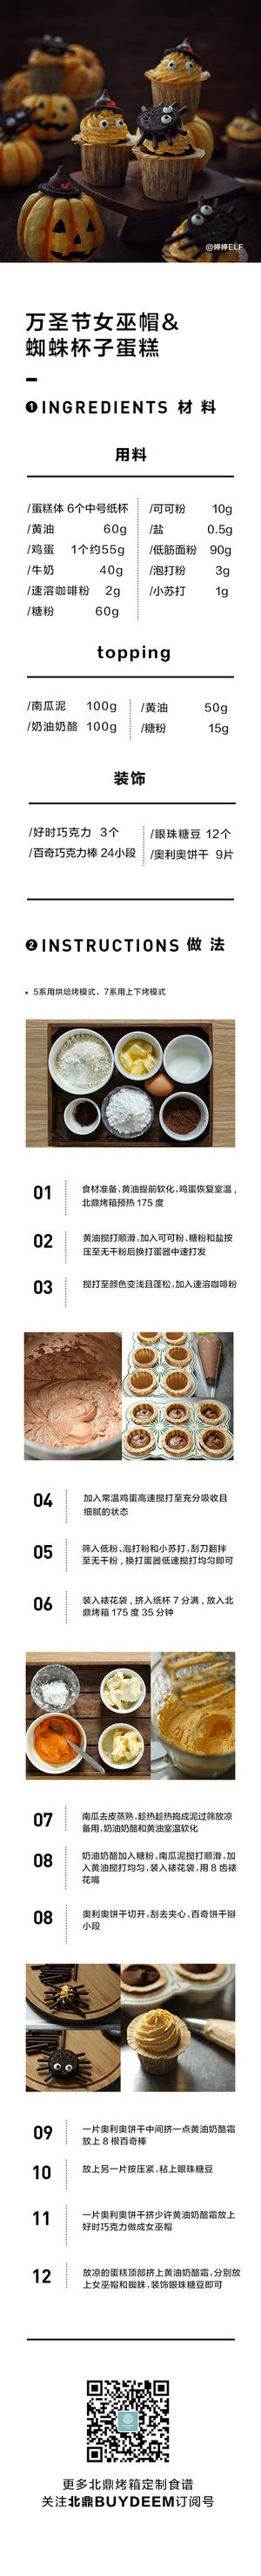 11月食谱合辑——【可盐可甜的烘焙甜品】的做法 步骤4